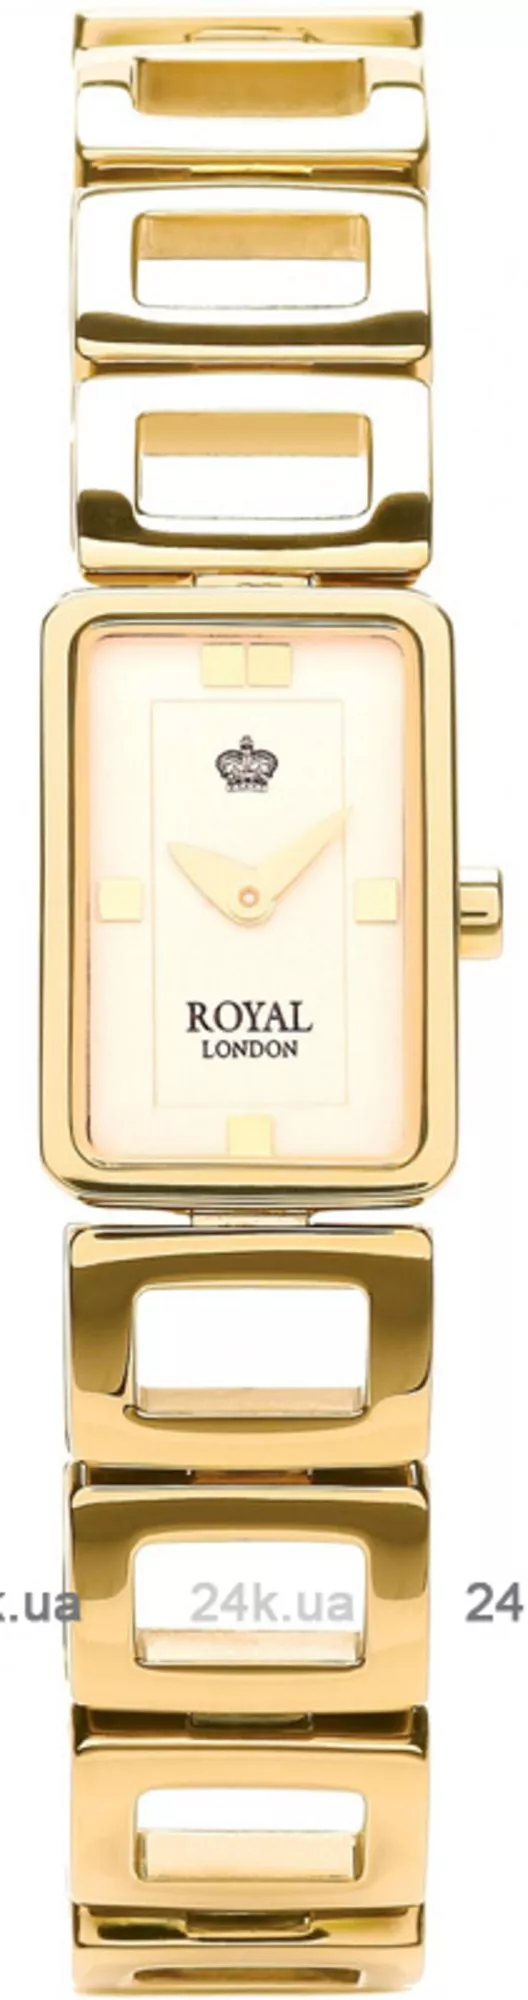 Часы Royal London 21166-04